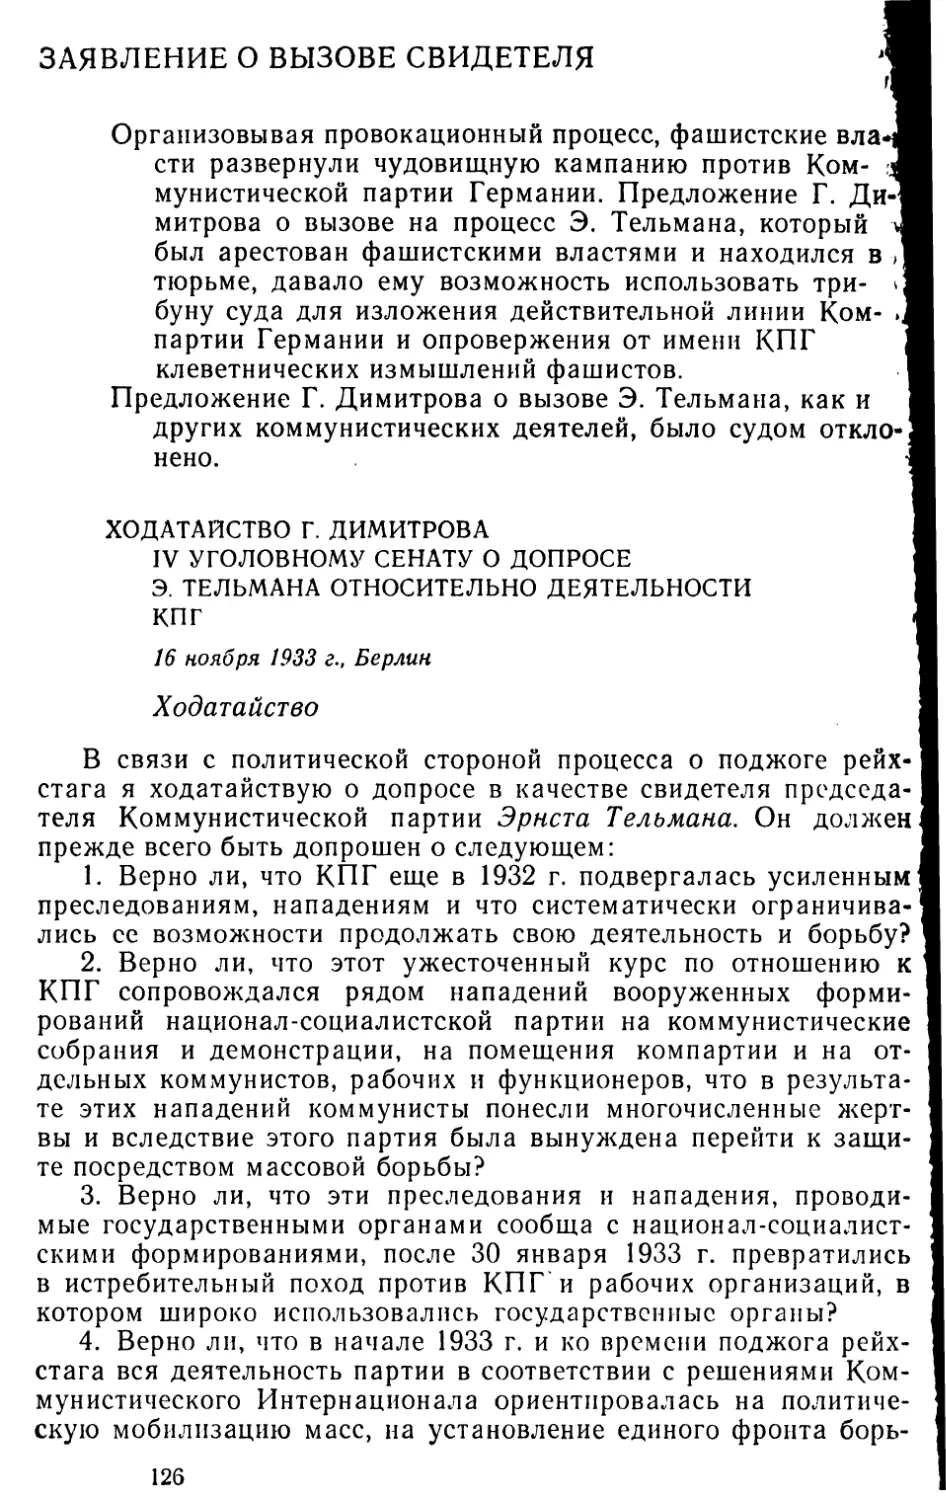 Заявление о вызове свидетеля
Ходатайство Г. Димитрова IV уголовному сенату о допросе Э. Тельмана относительно деятельности КП Г. 16 ноября 1933 г